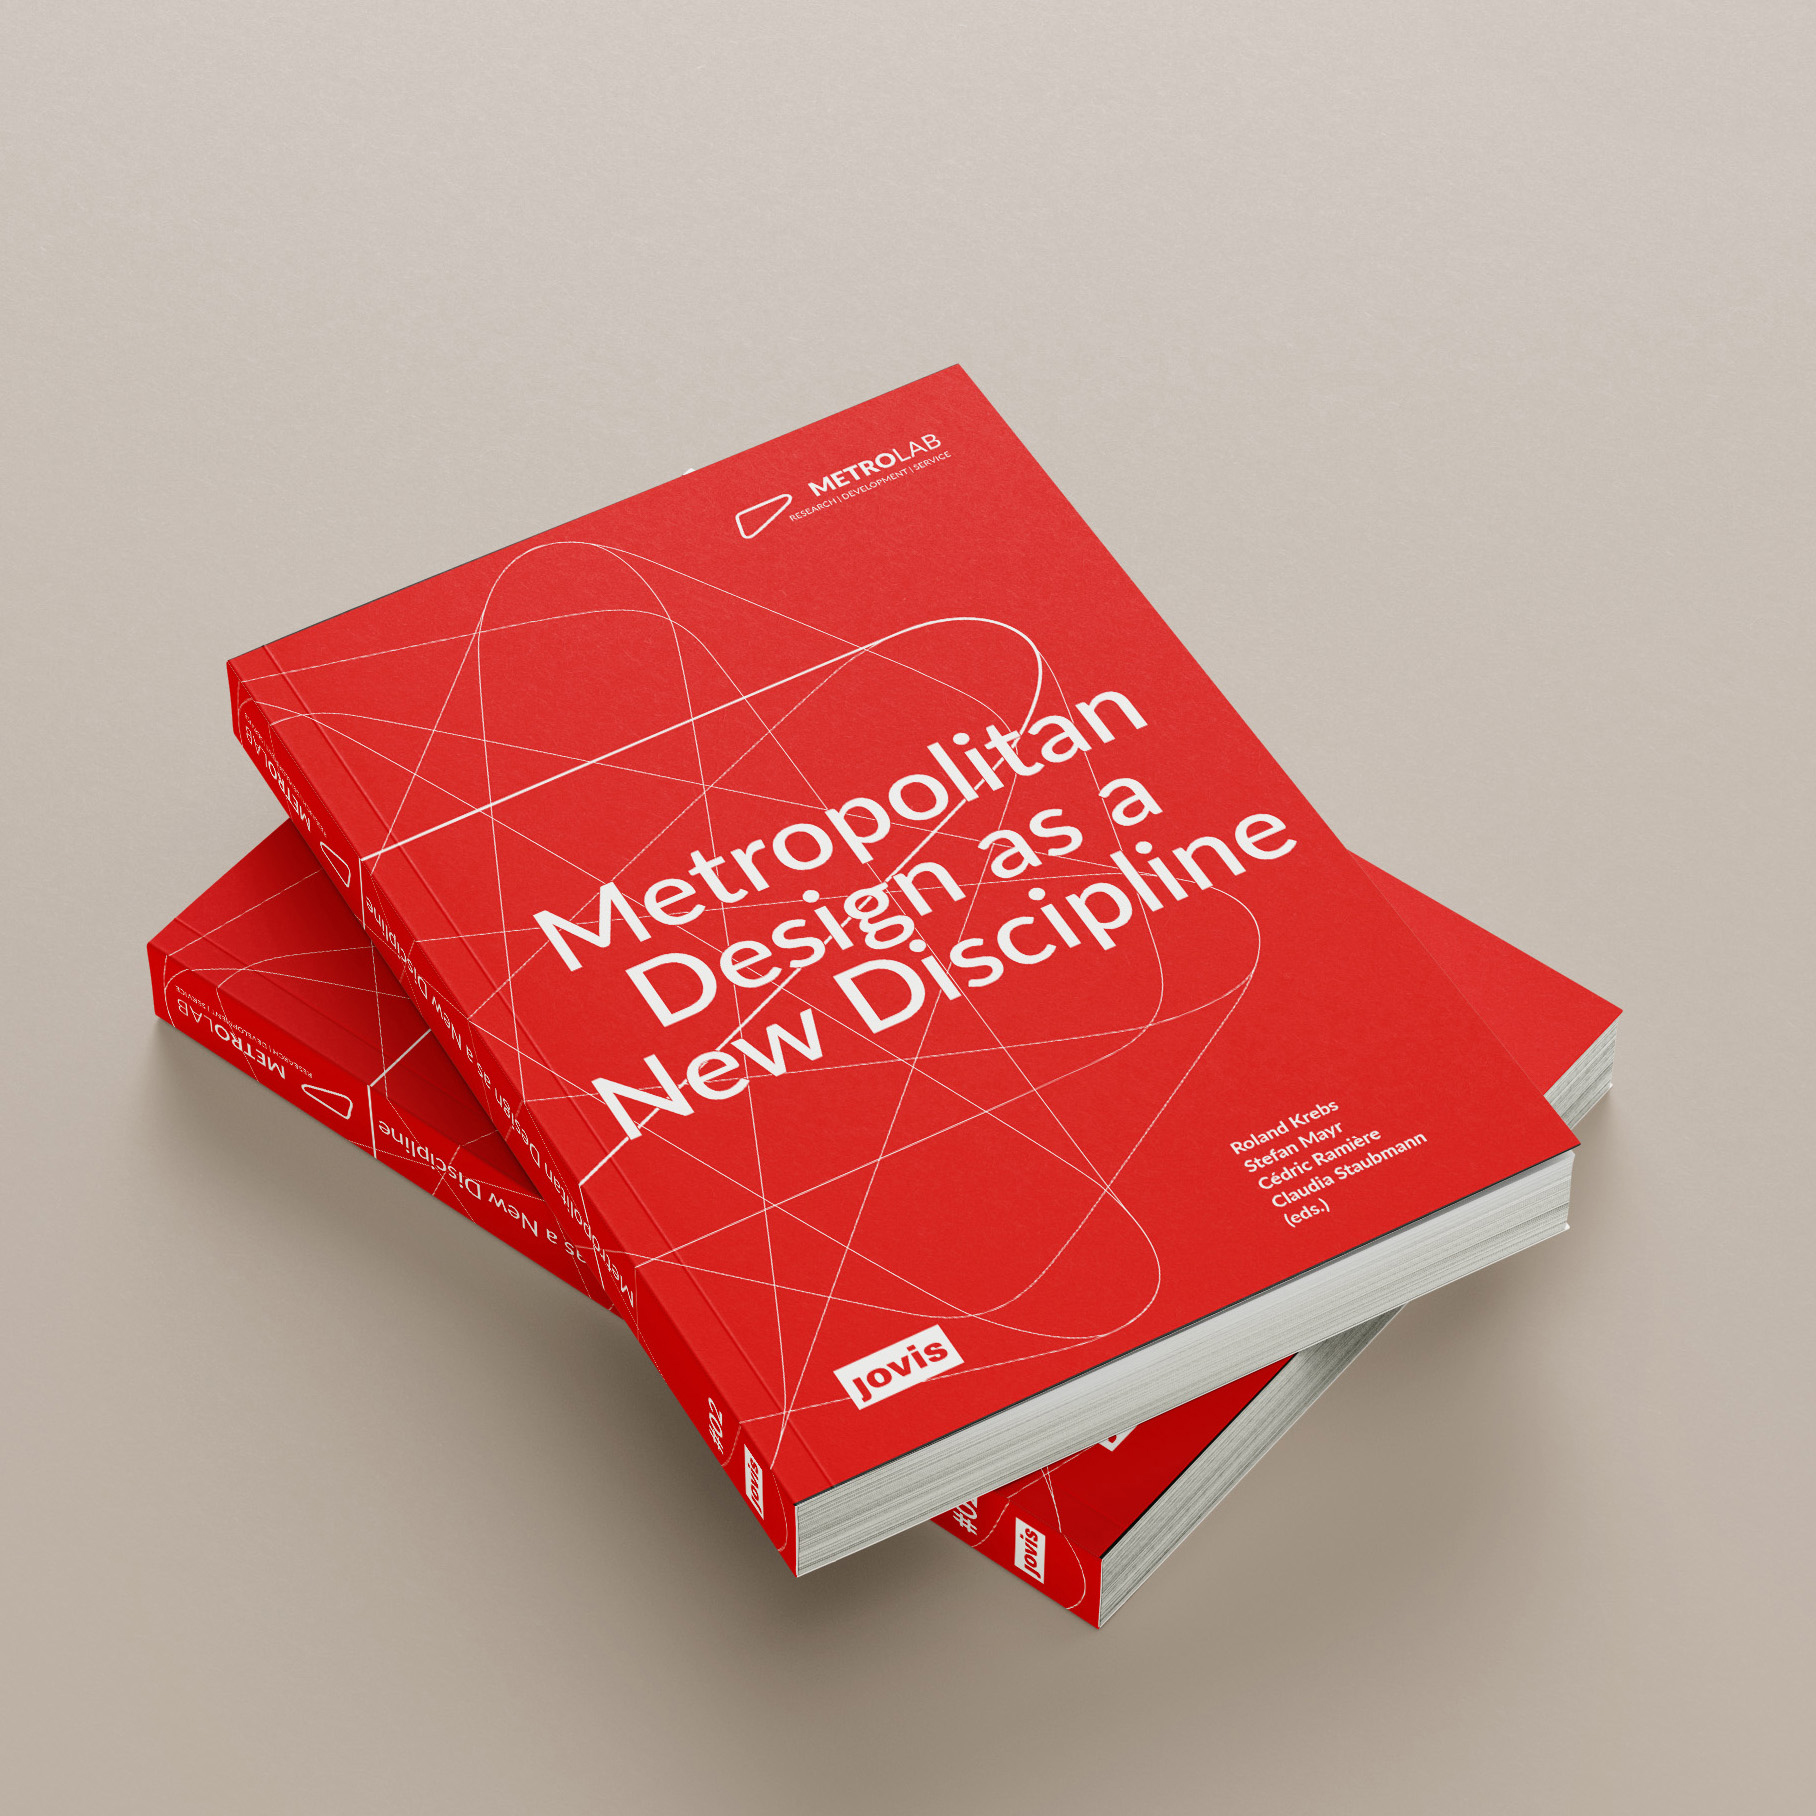 00_Metropolitan Design as a New Discipline_Cover